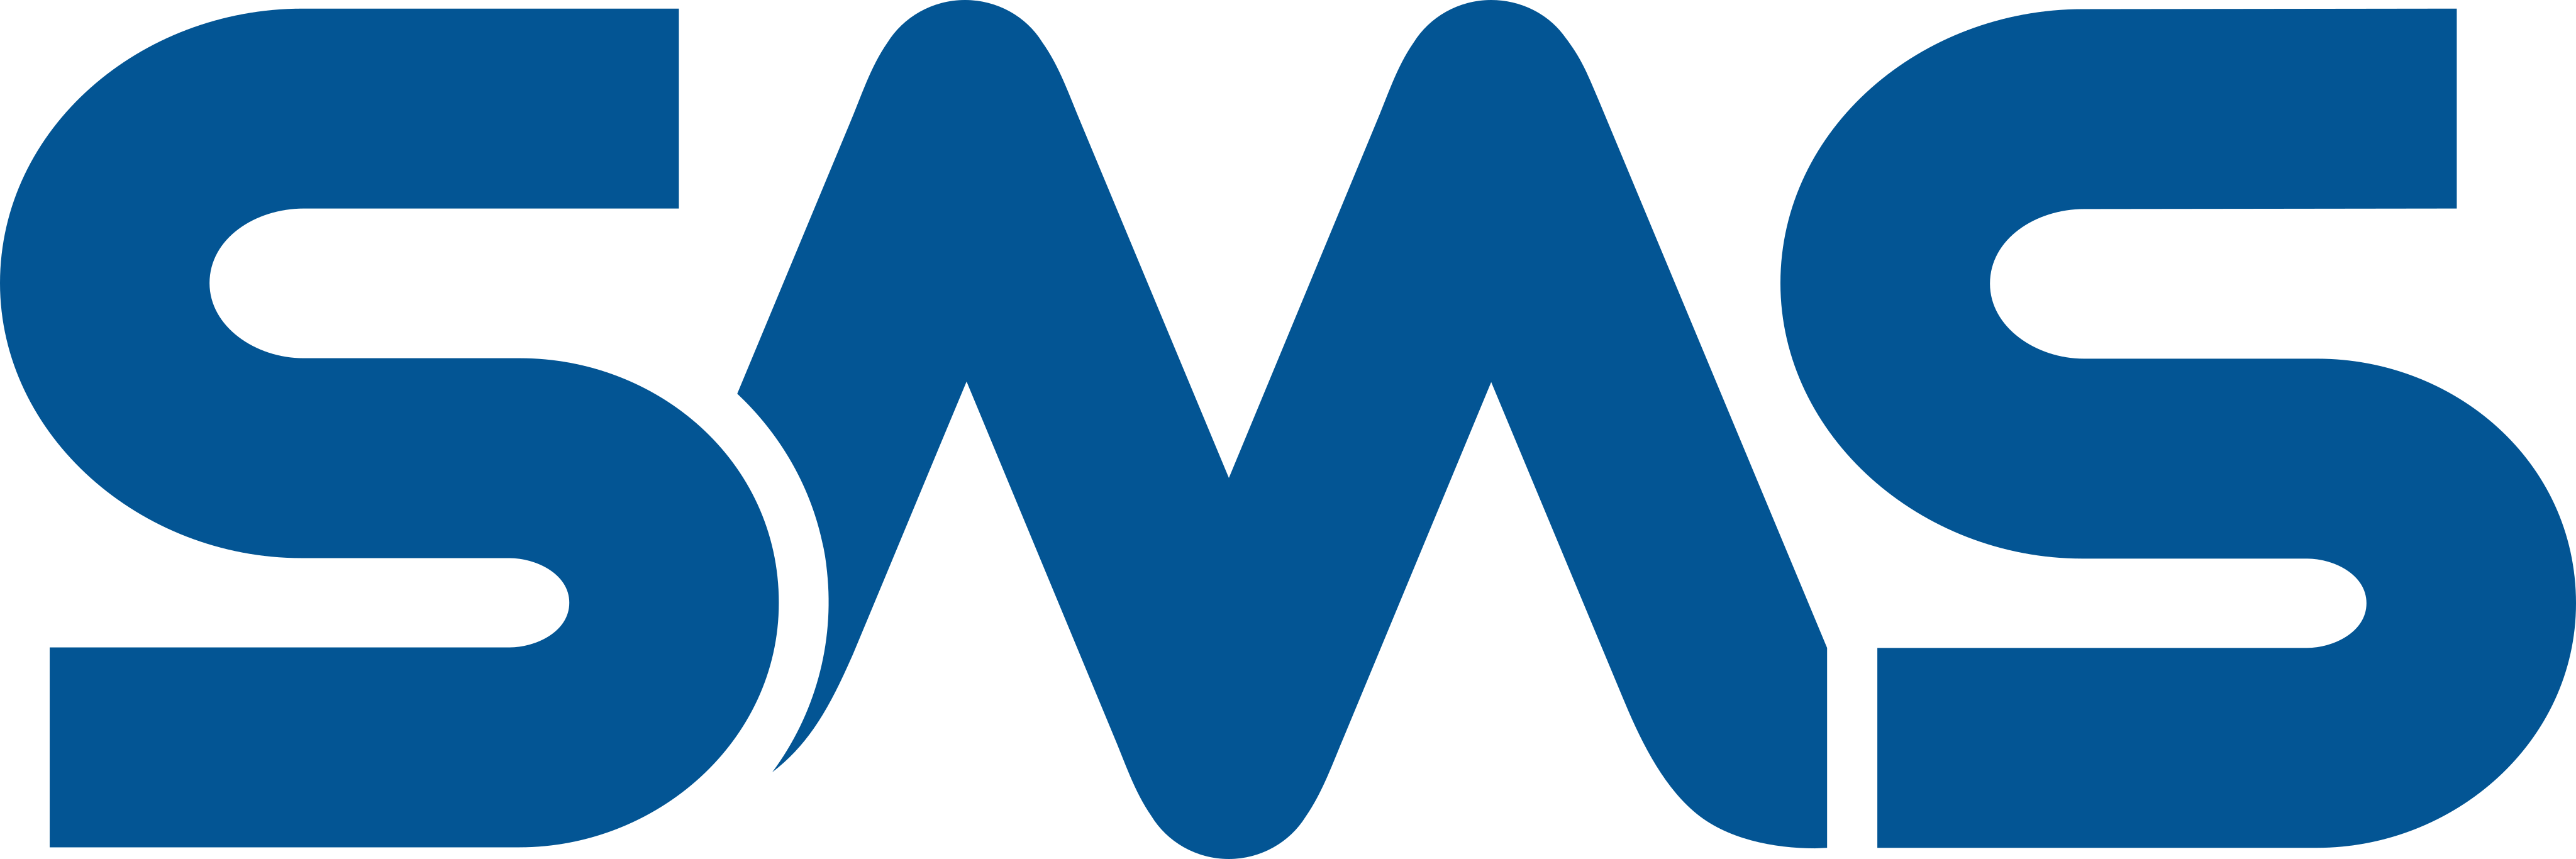 SMS Nobreak Logo.